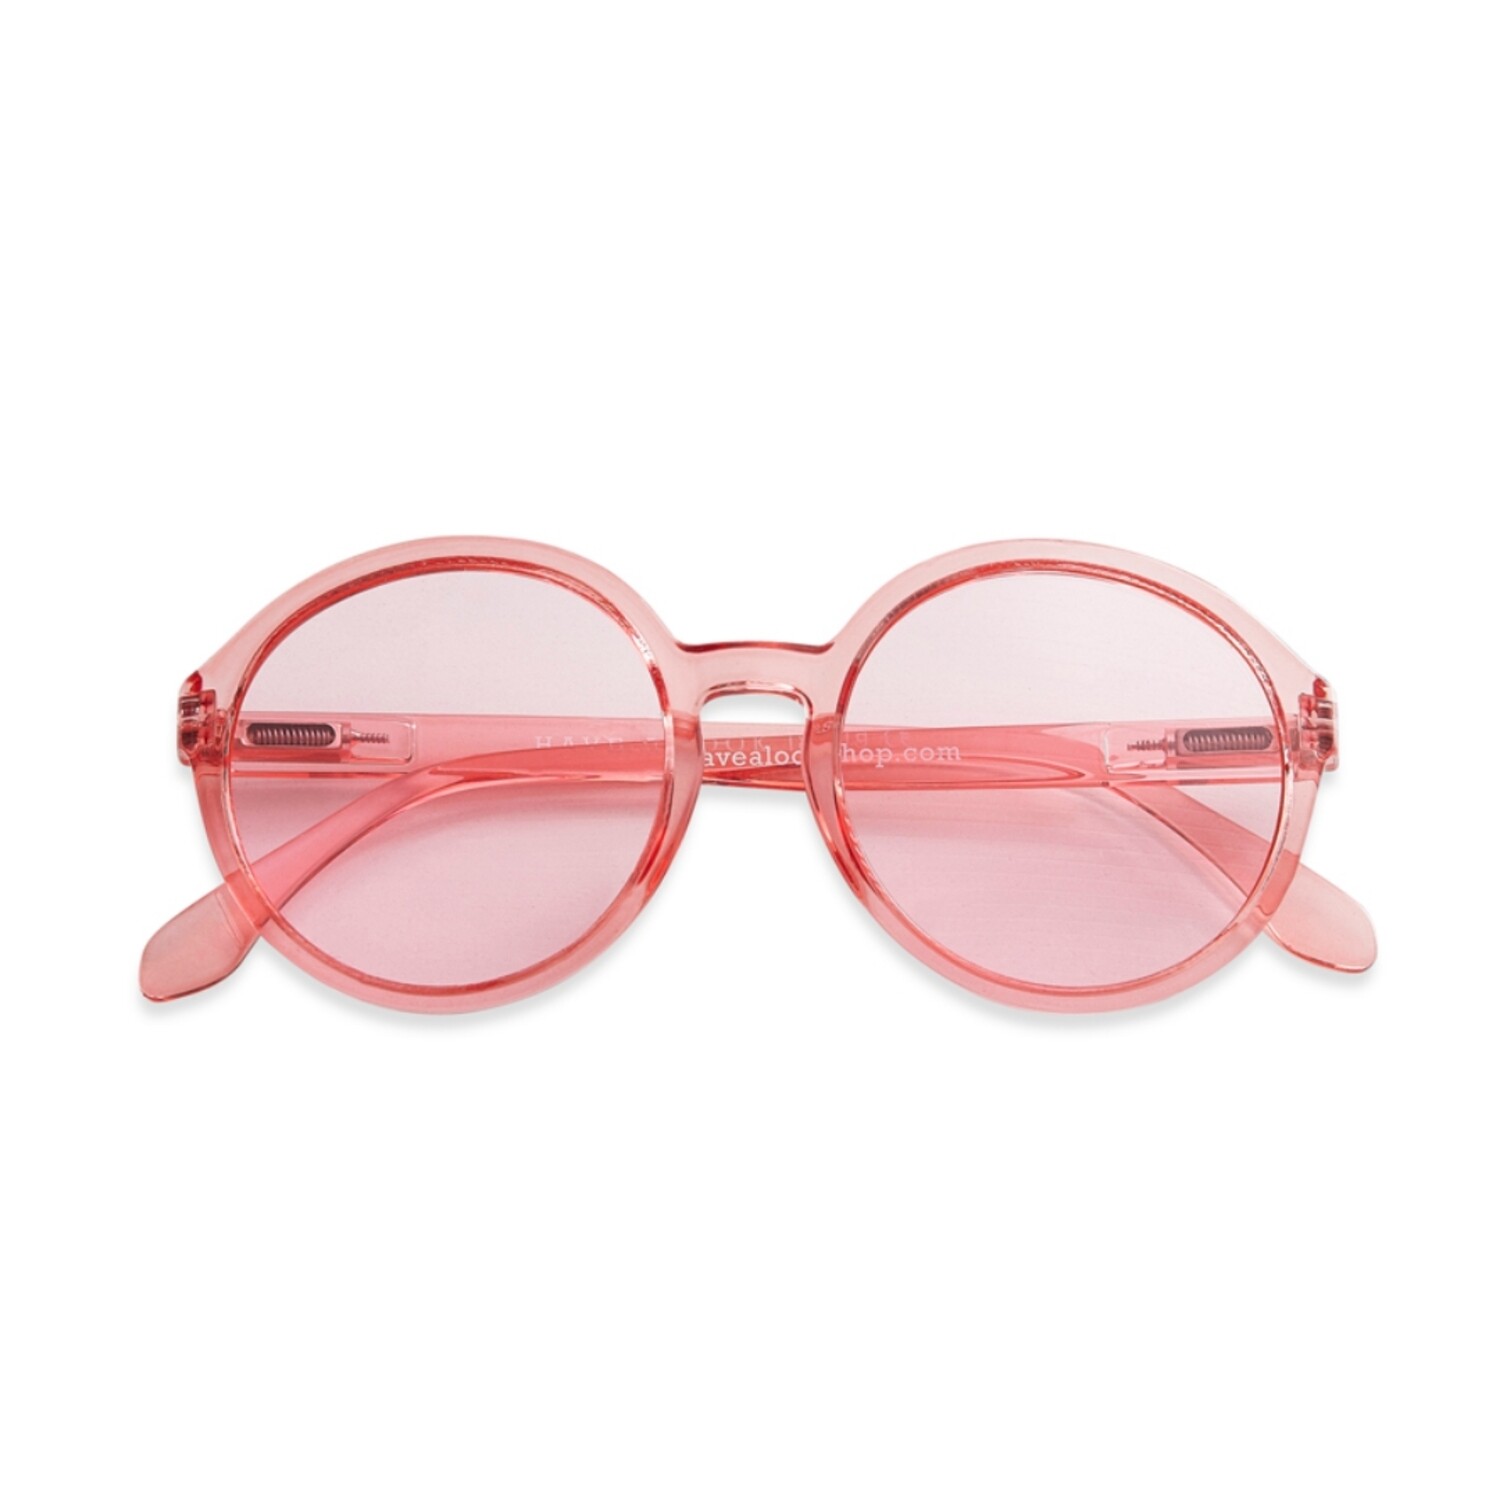 Слънчеви очила "Diva Flamingo"
Have A Look